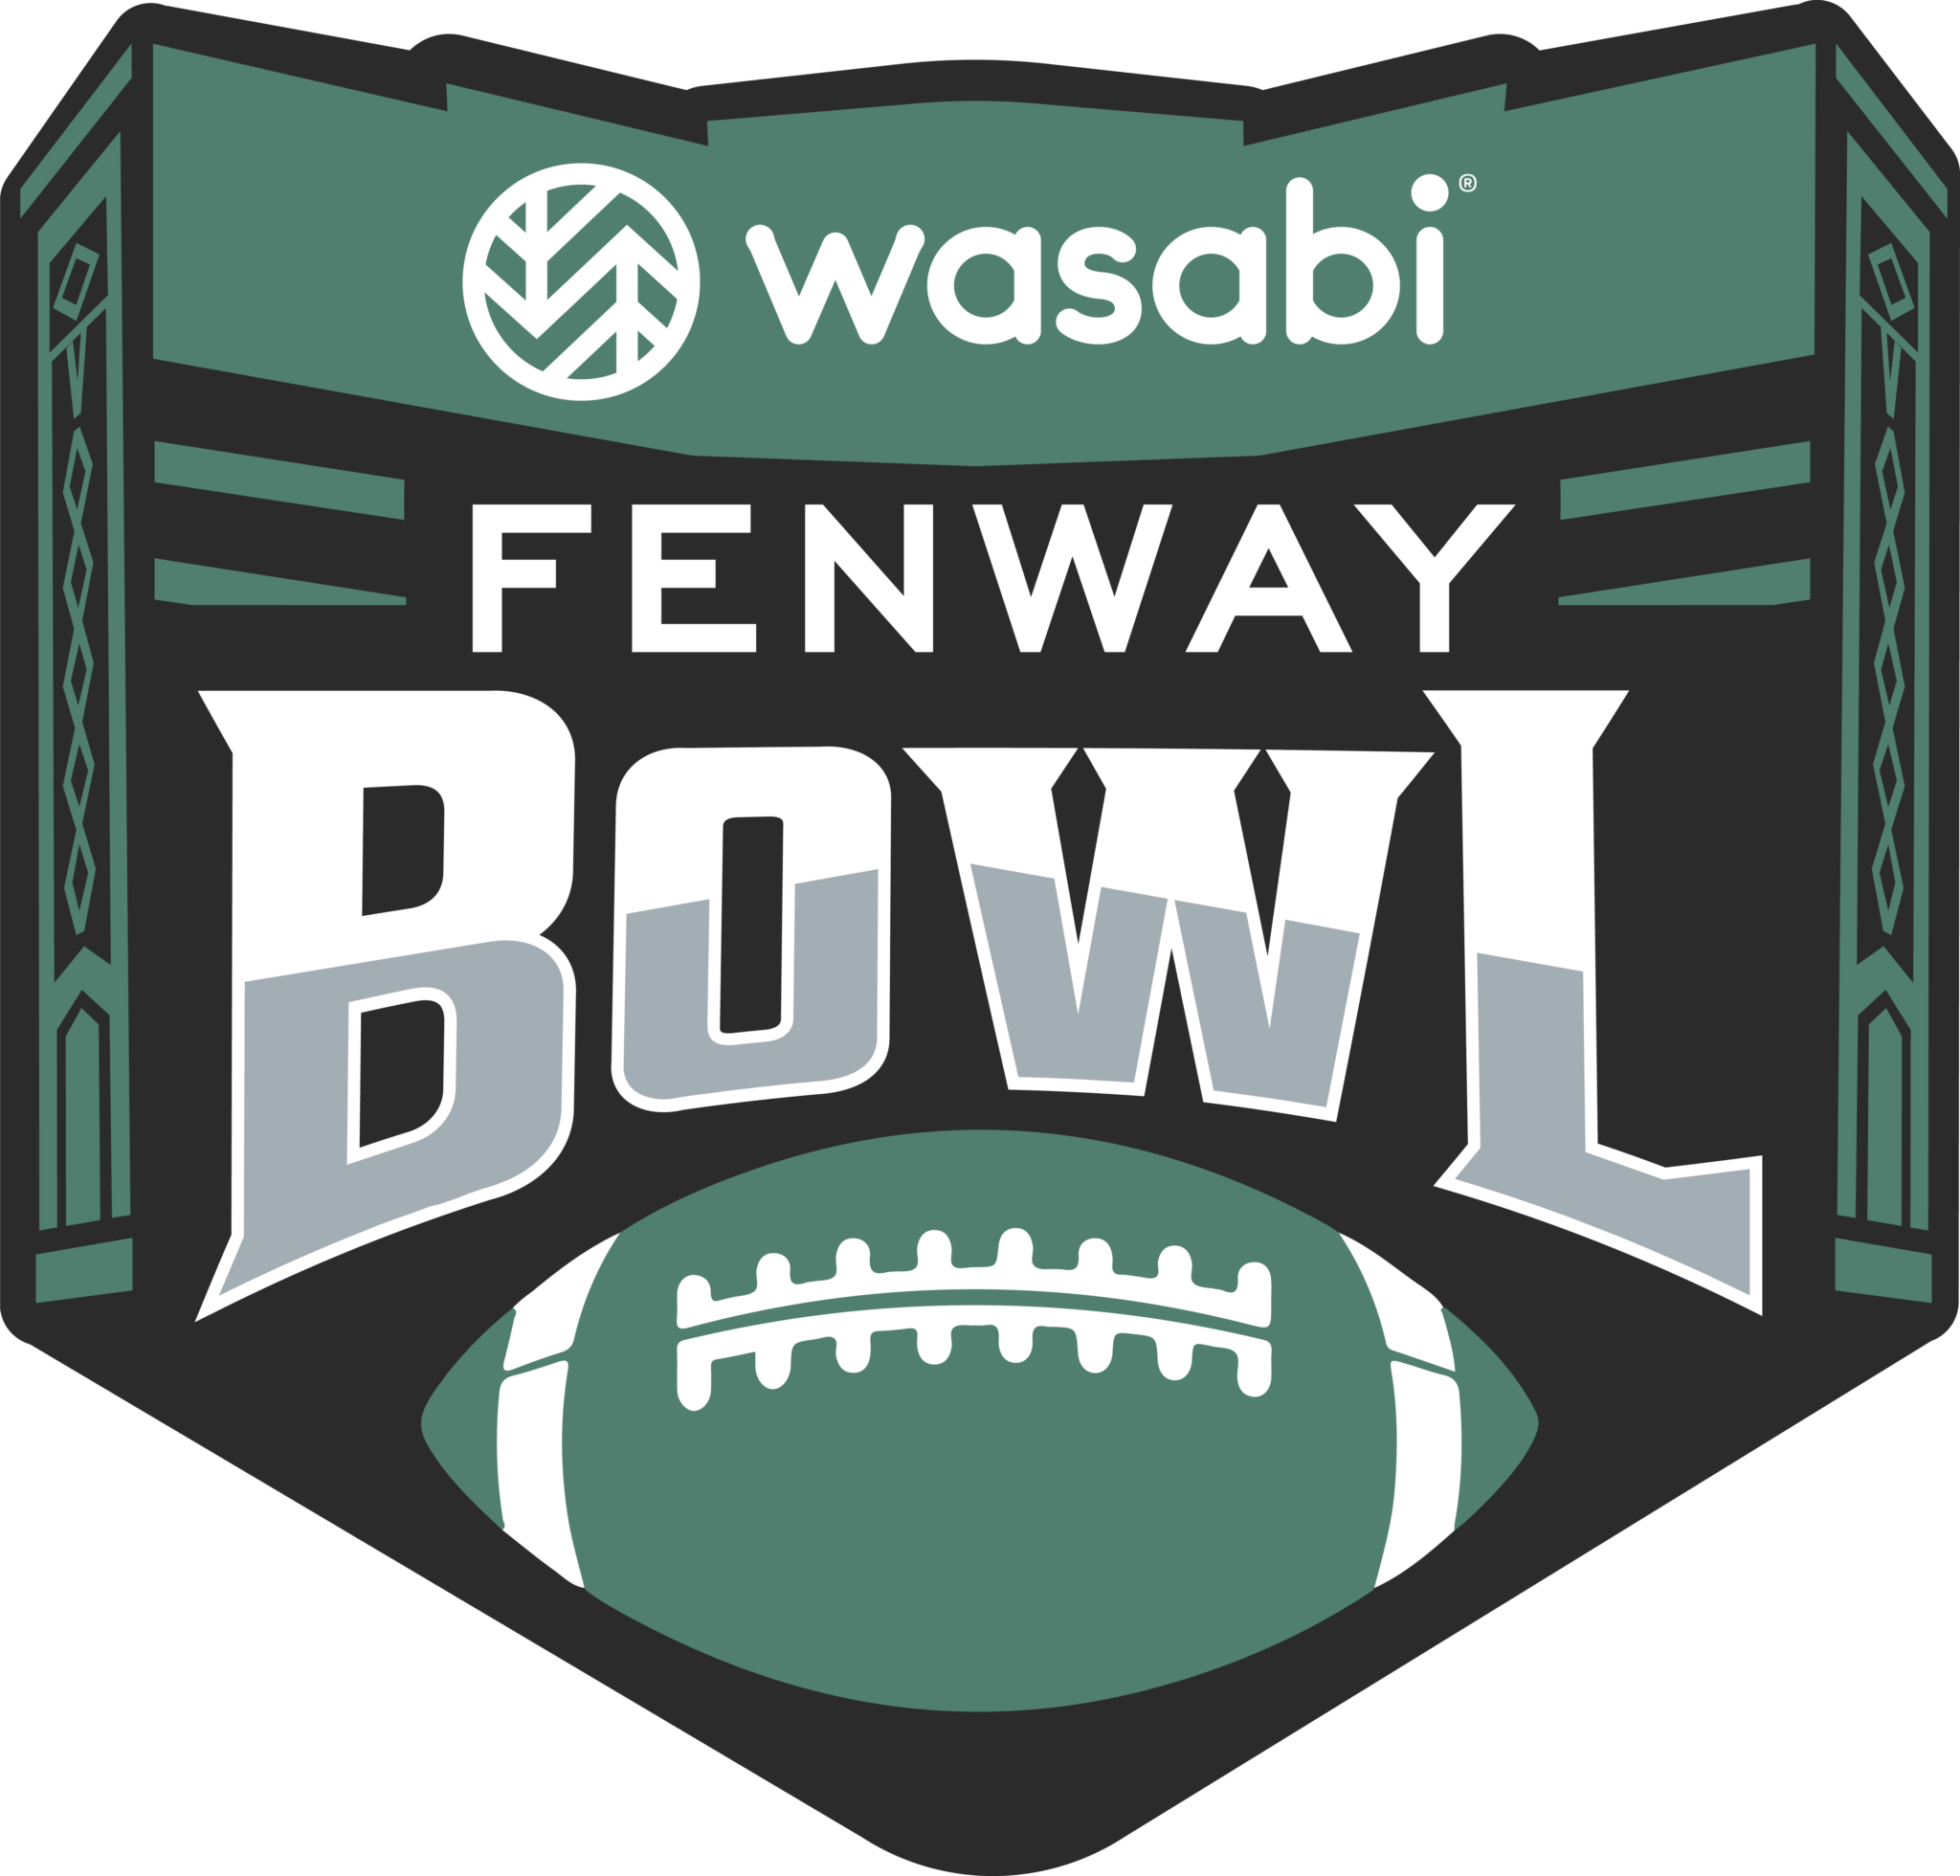 ESPN Events’ Fenway Bowl Announces Wasabi Technologies as Title Sponsor